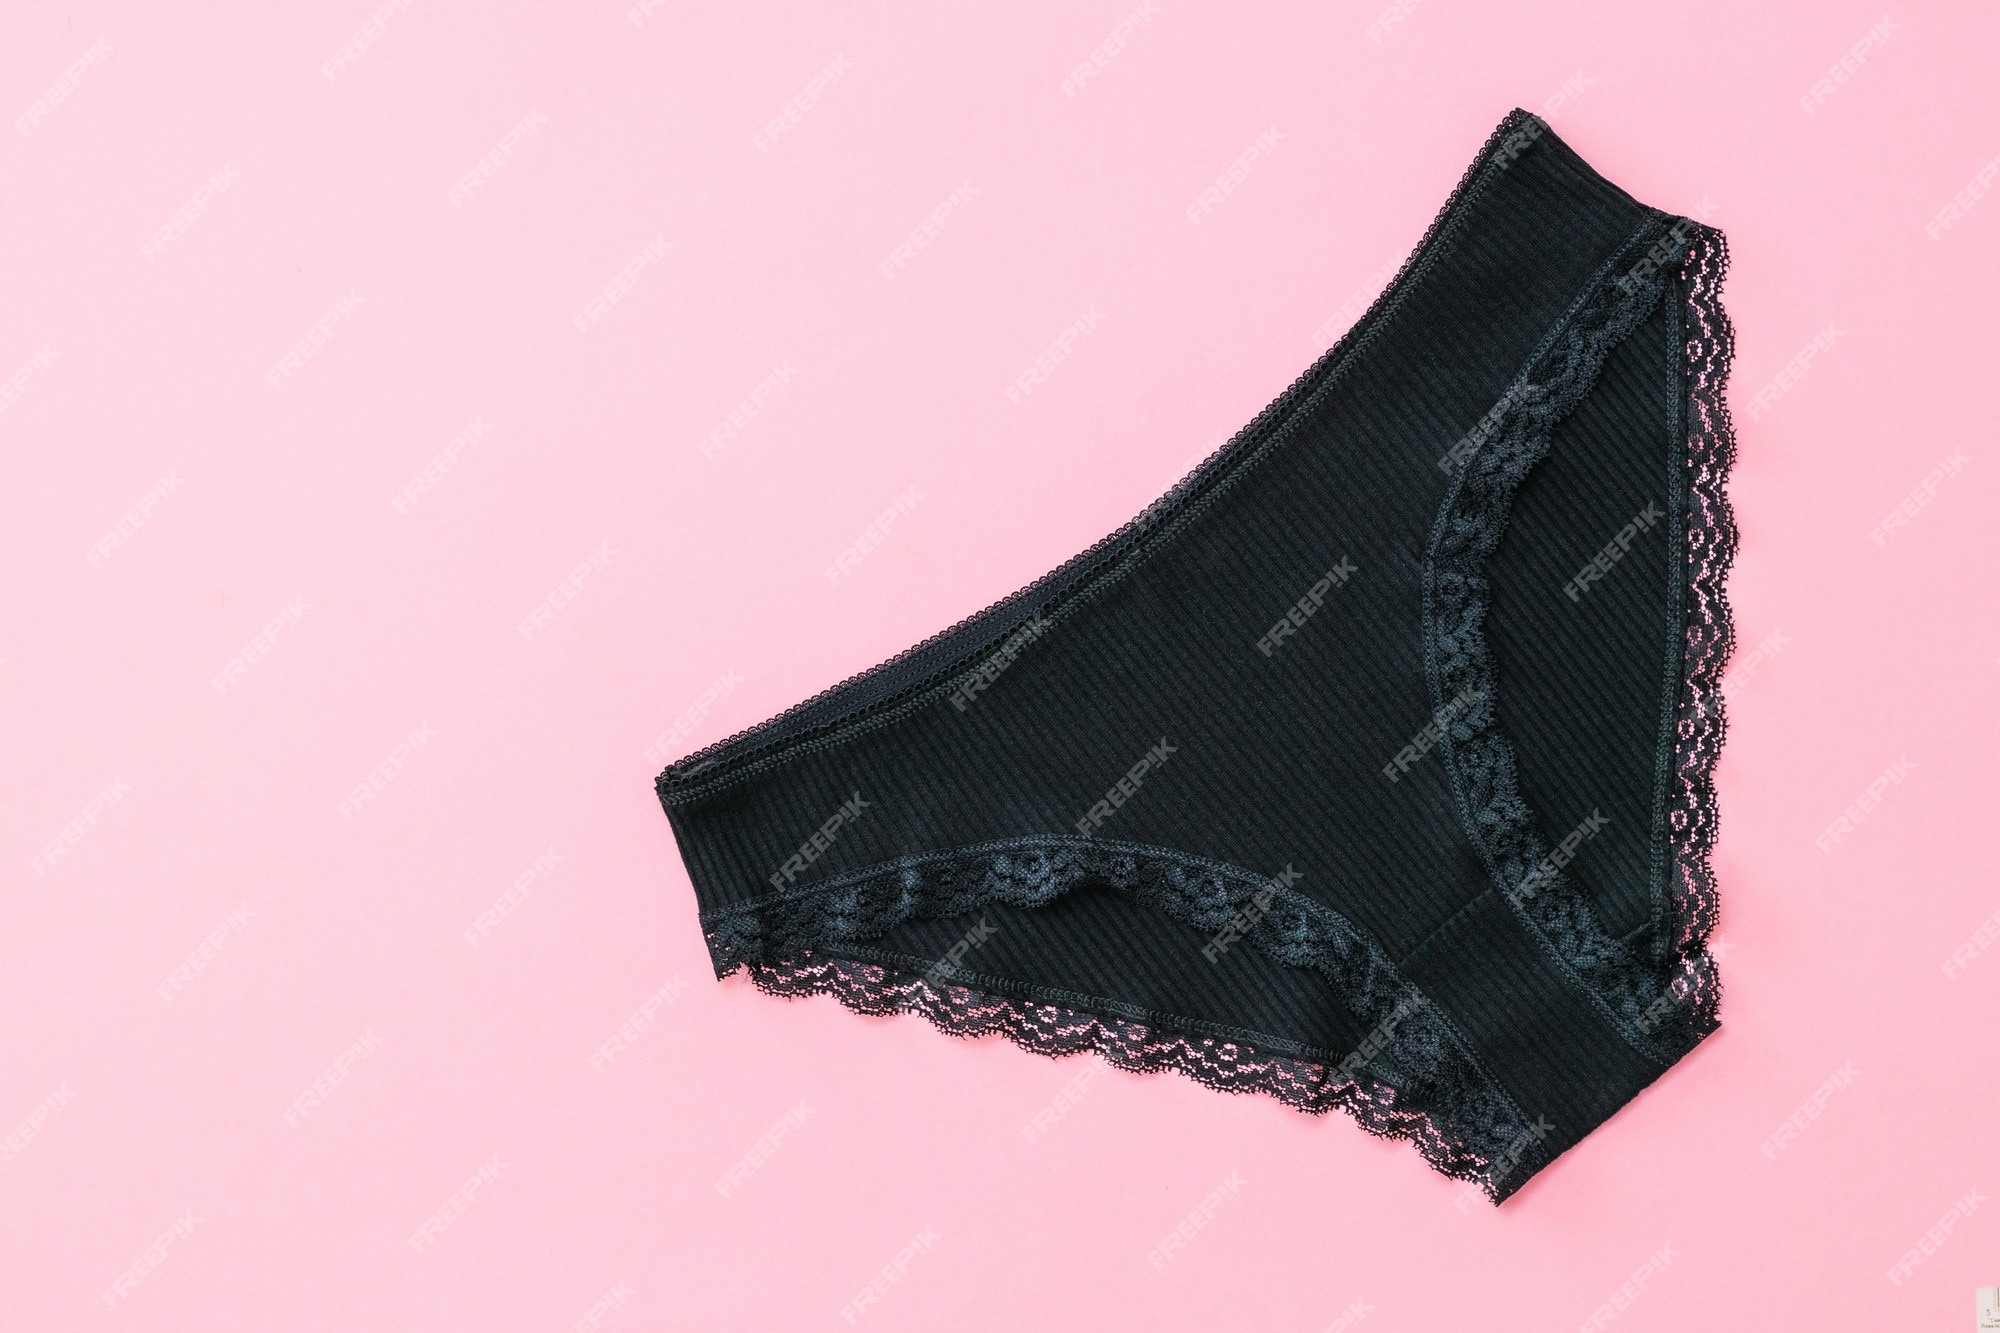 Bragas mujer de moda de algodón negro sobre superficie ropa interior de bonita y cómoda. | Foto Premium